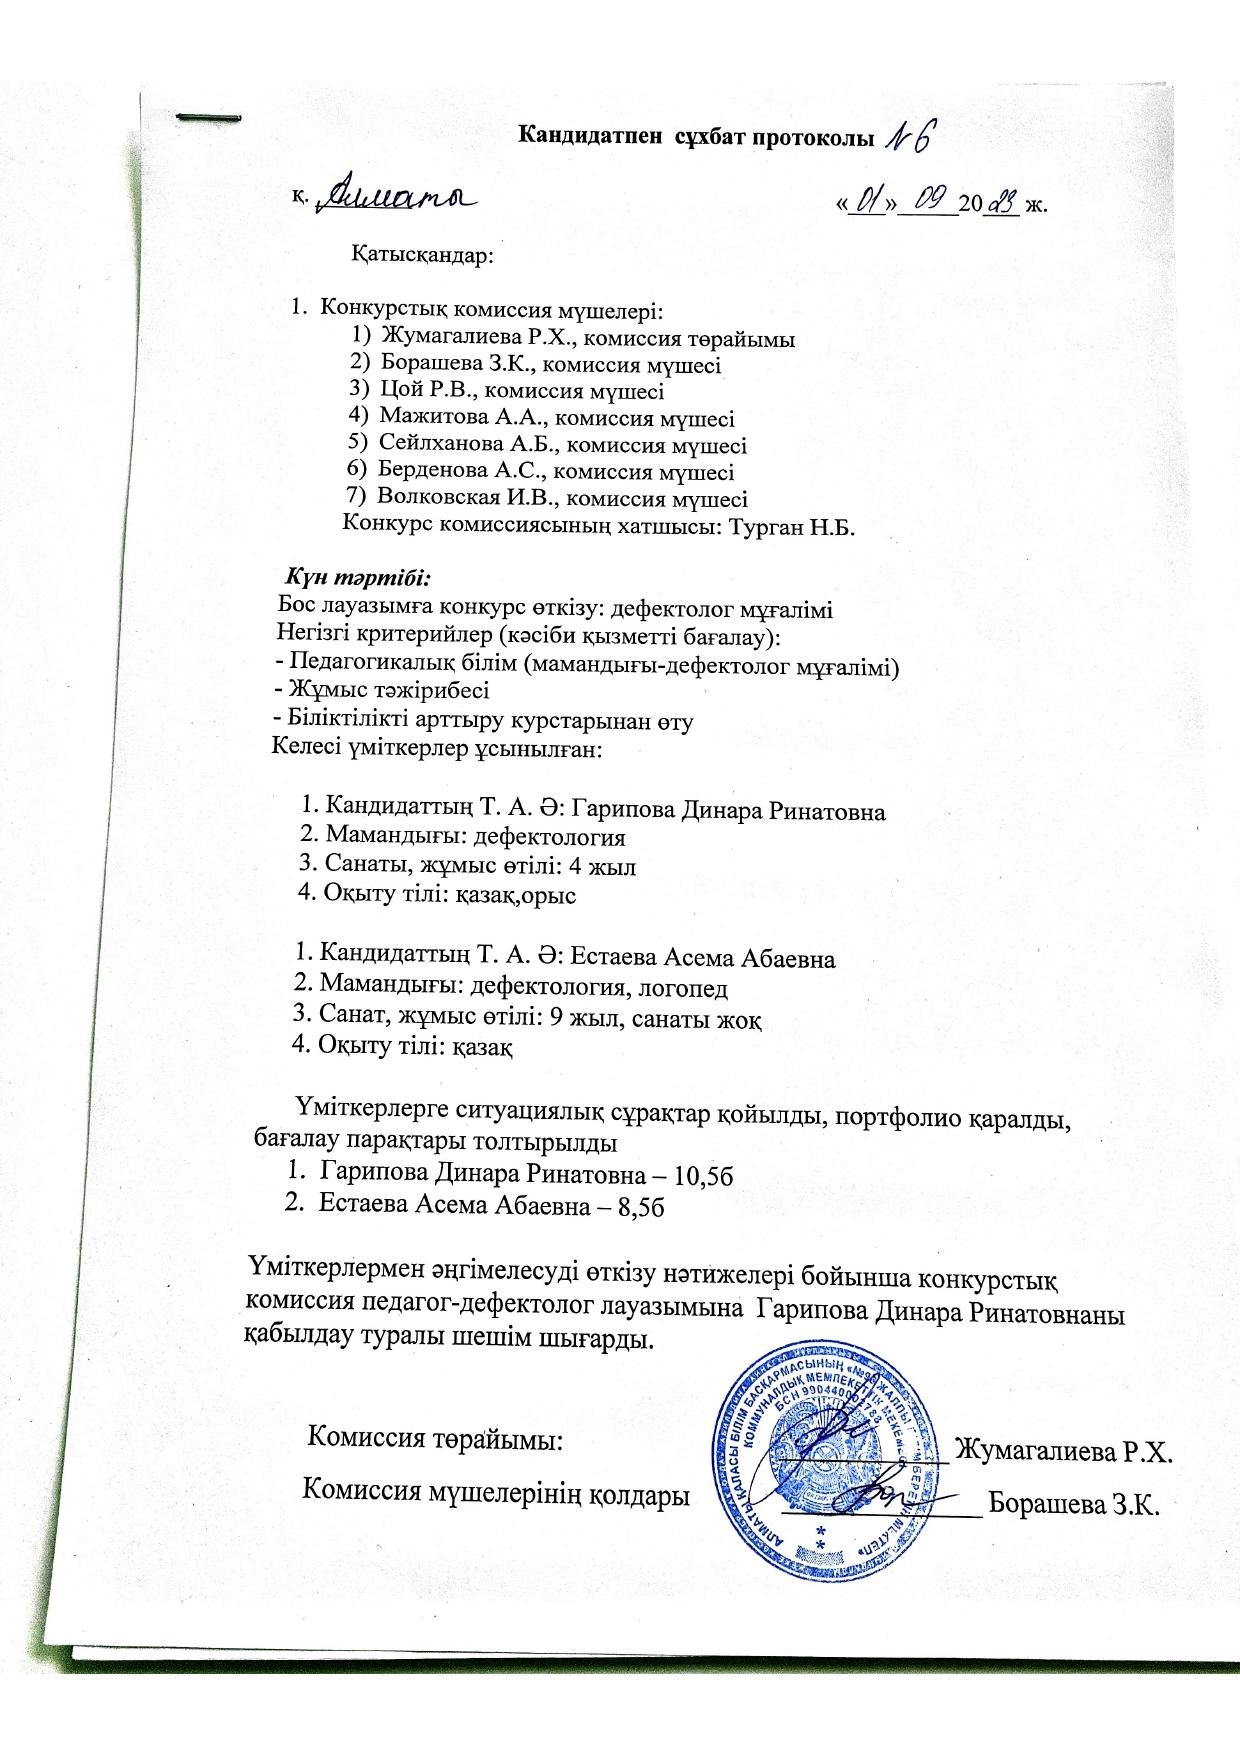 Протокол №6 конкурстық комиссияның отырысы.